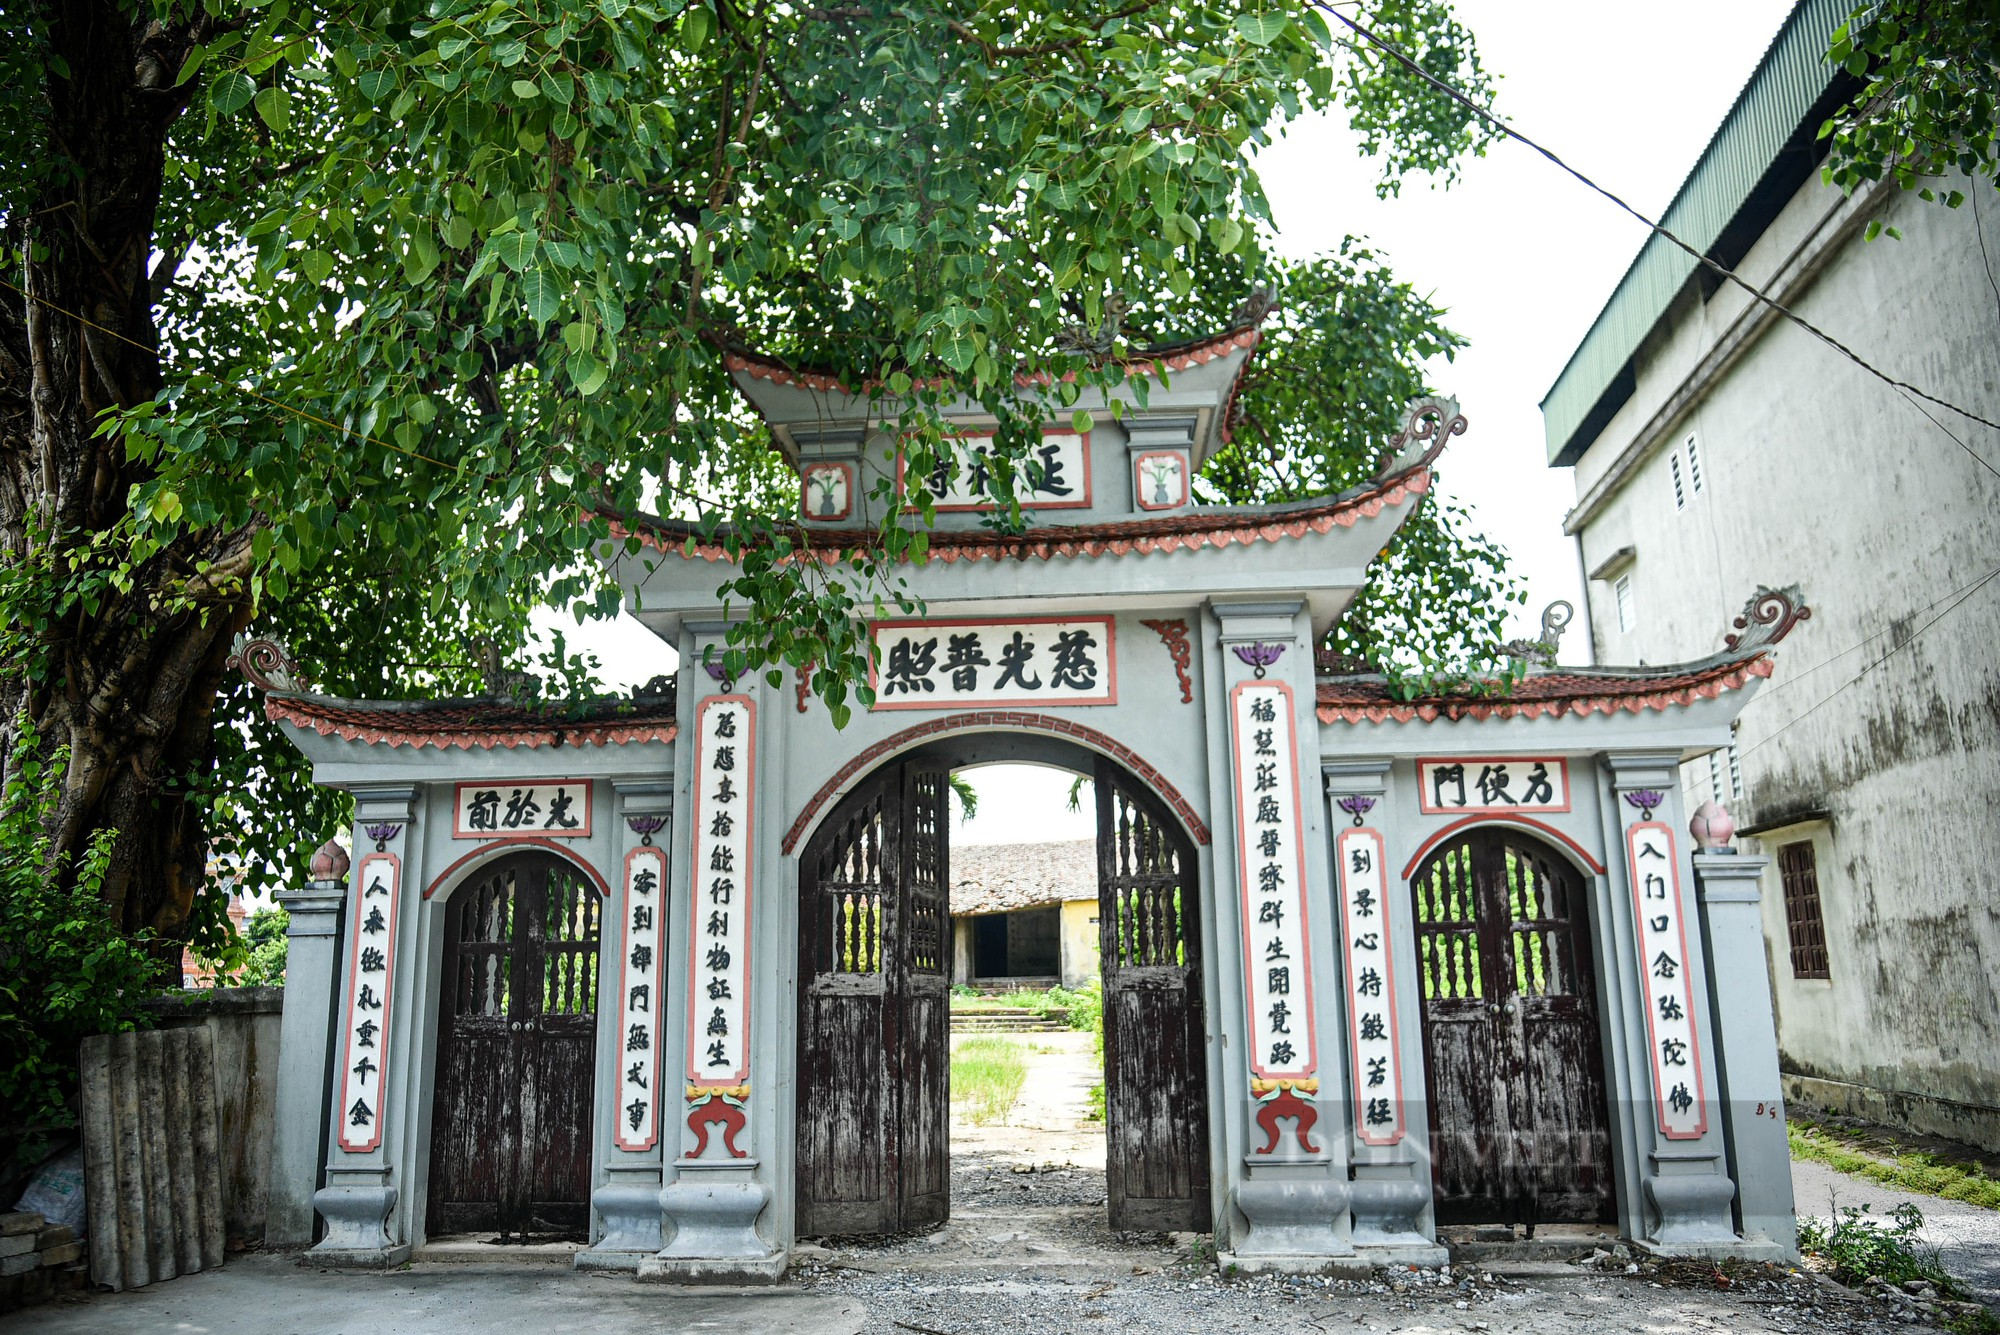 Ngôi chùa gần 700 tuổi ở ngoại thành Hà Nội xuống cấp nghiêm trọng - Ảnh 13.